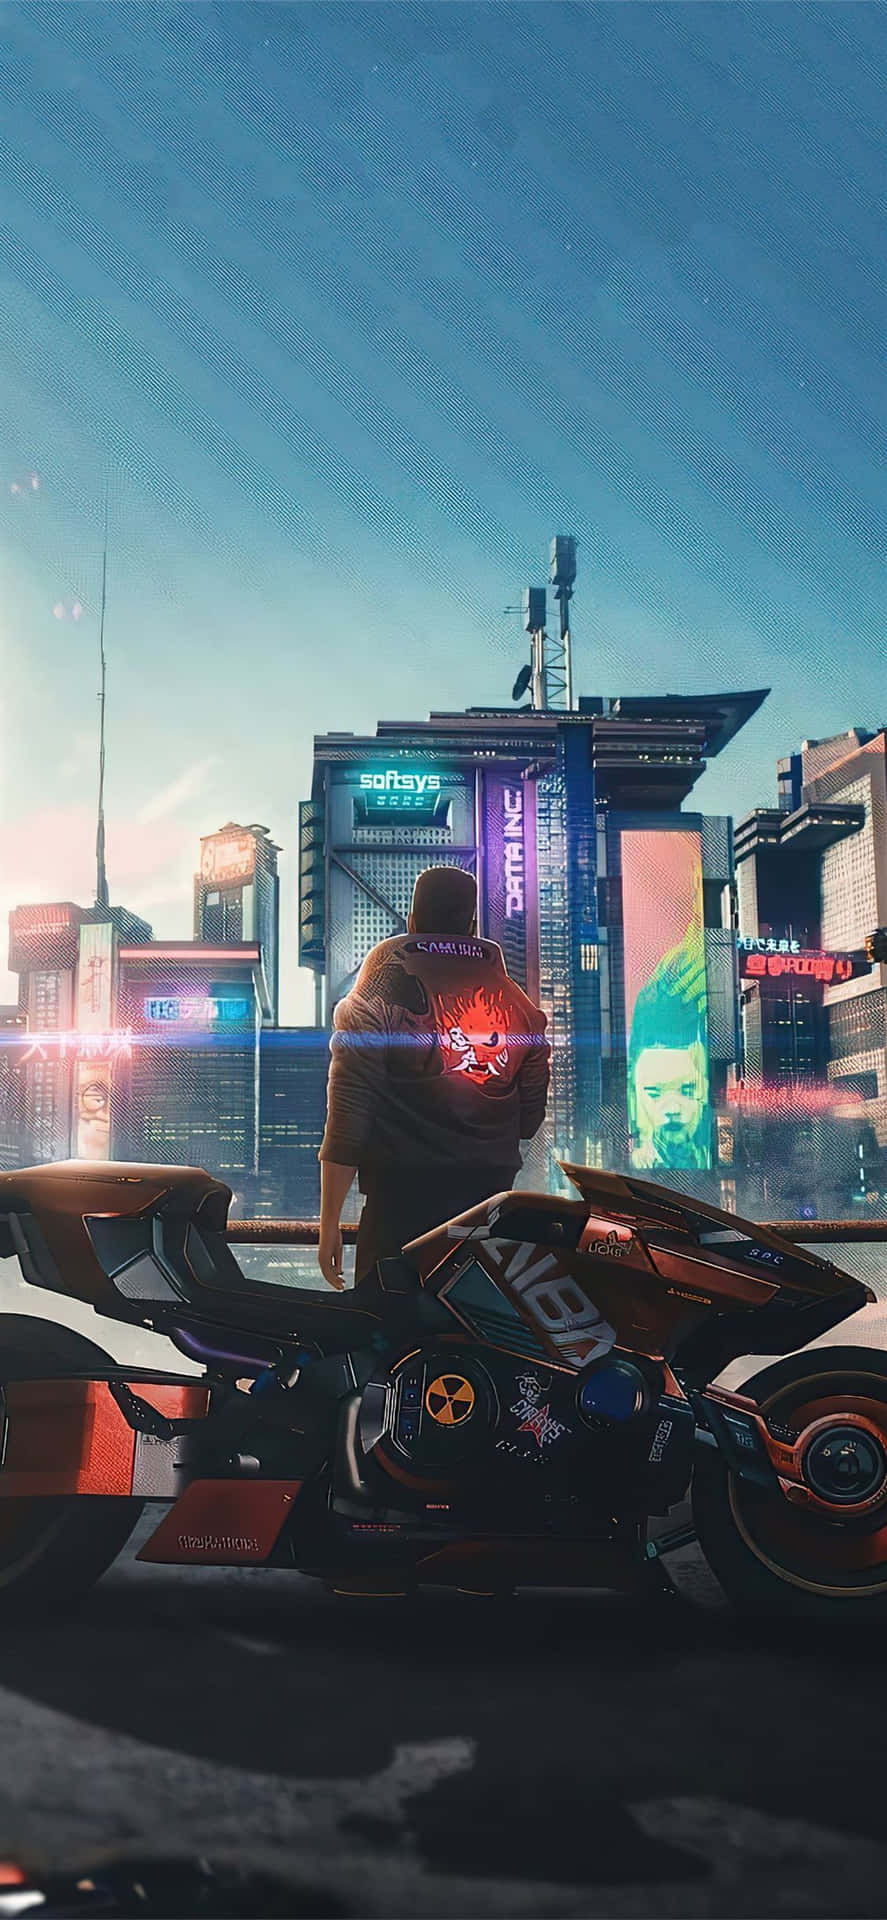 Hình nền Cyberpunk 2077 cho iPhone XS sẽ đưa bạn đến một thế giới tương lai đầy máu lửa và thú vị. Tạo sự khác biệt cho điện thoại của bạn với hình ảnh này và cảm nhận không khí tội phạm của thành phố. 